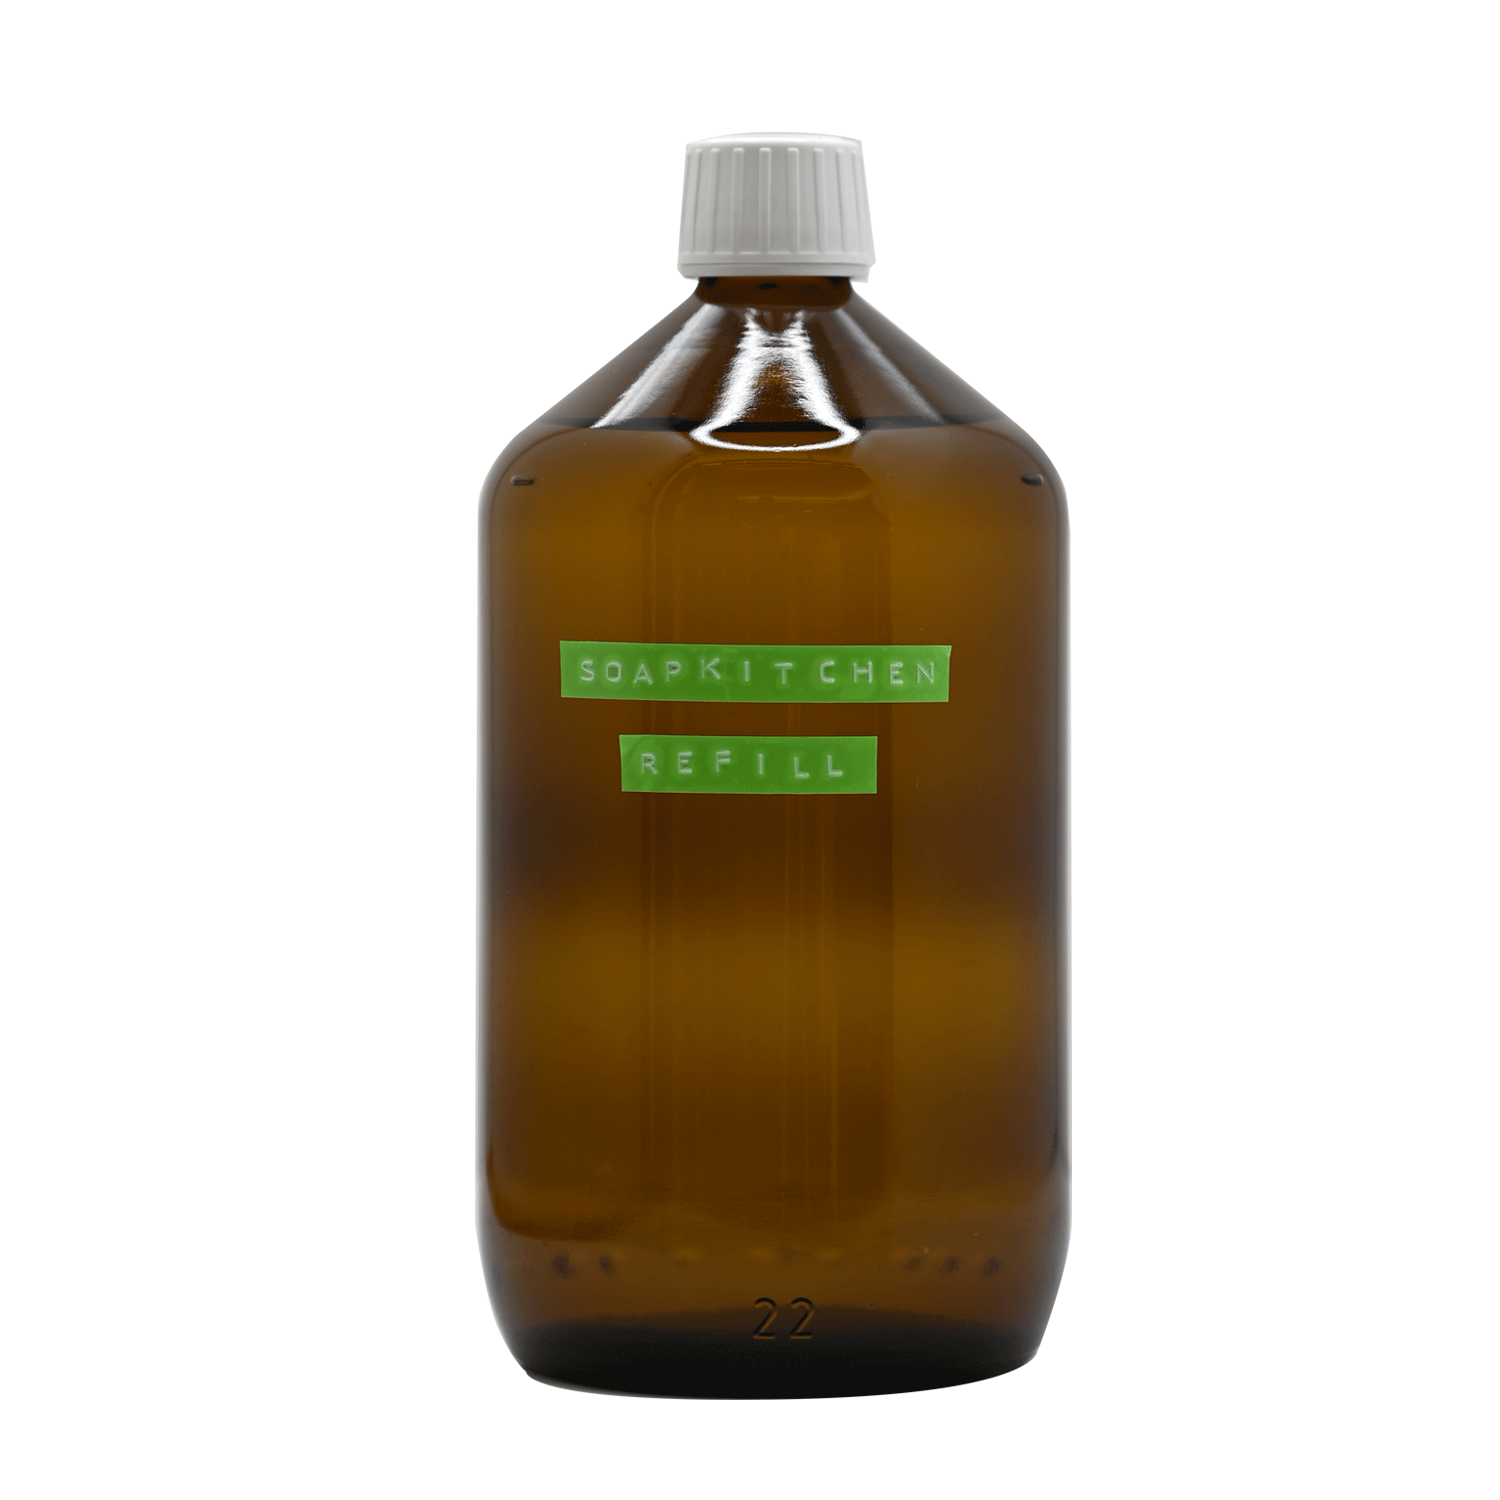 Black Pine 1 Liter Refill Seife von Soeder*